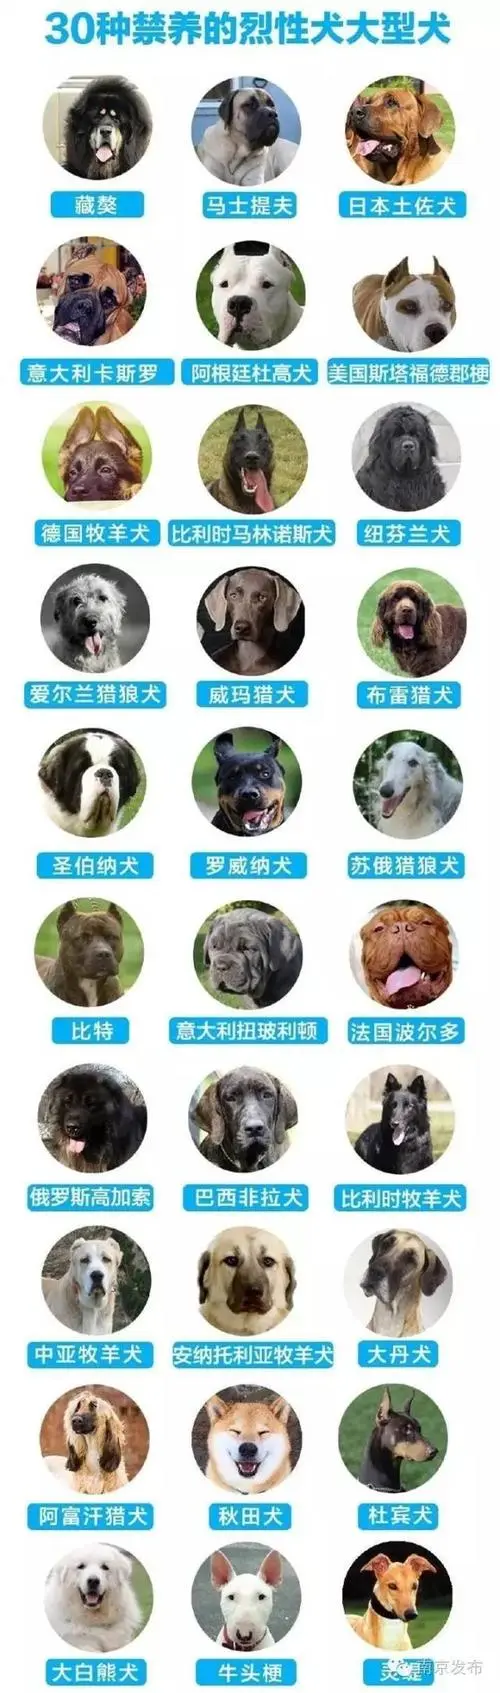 中国十大禁犬排名 中国十大禁犬排名榜